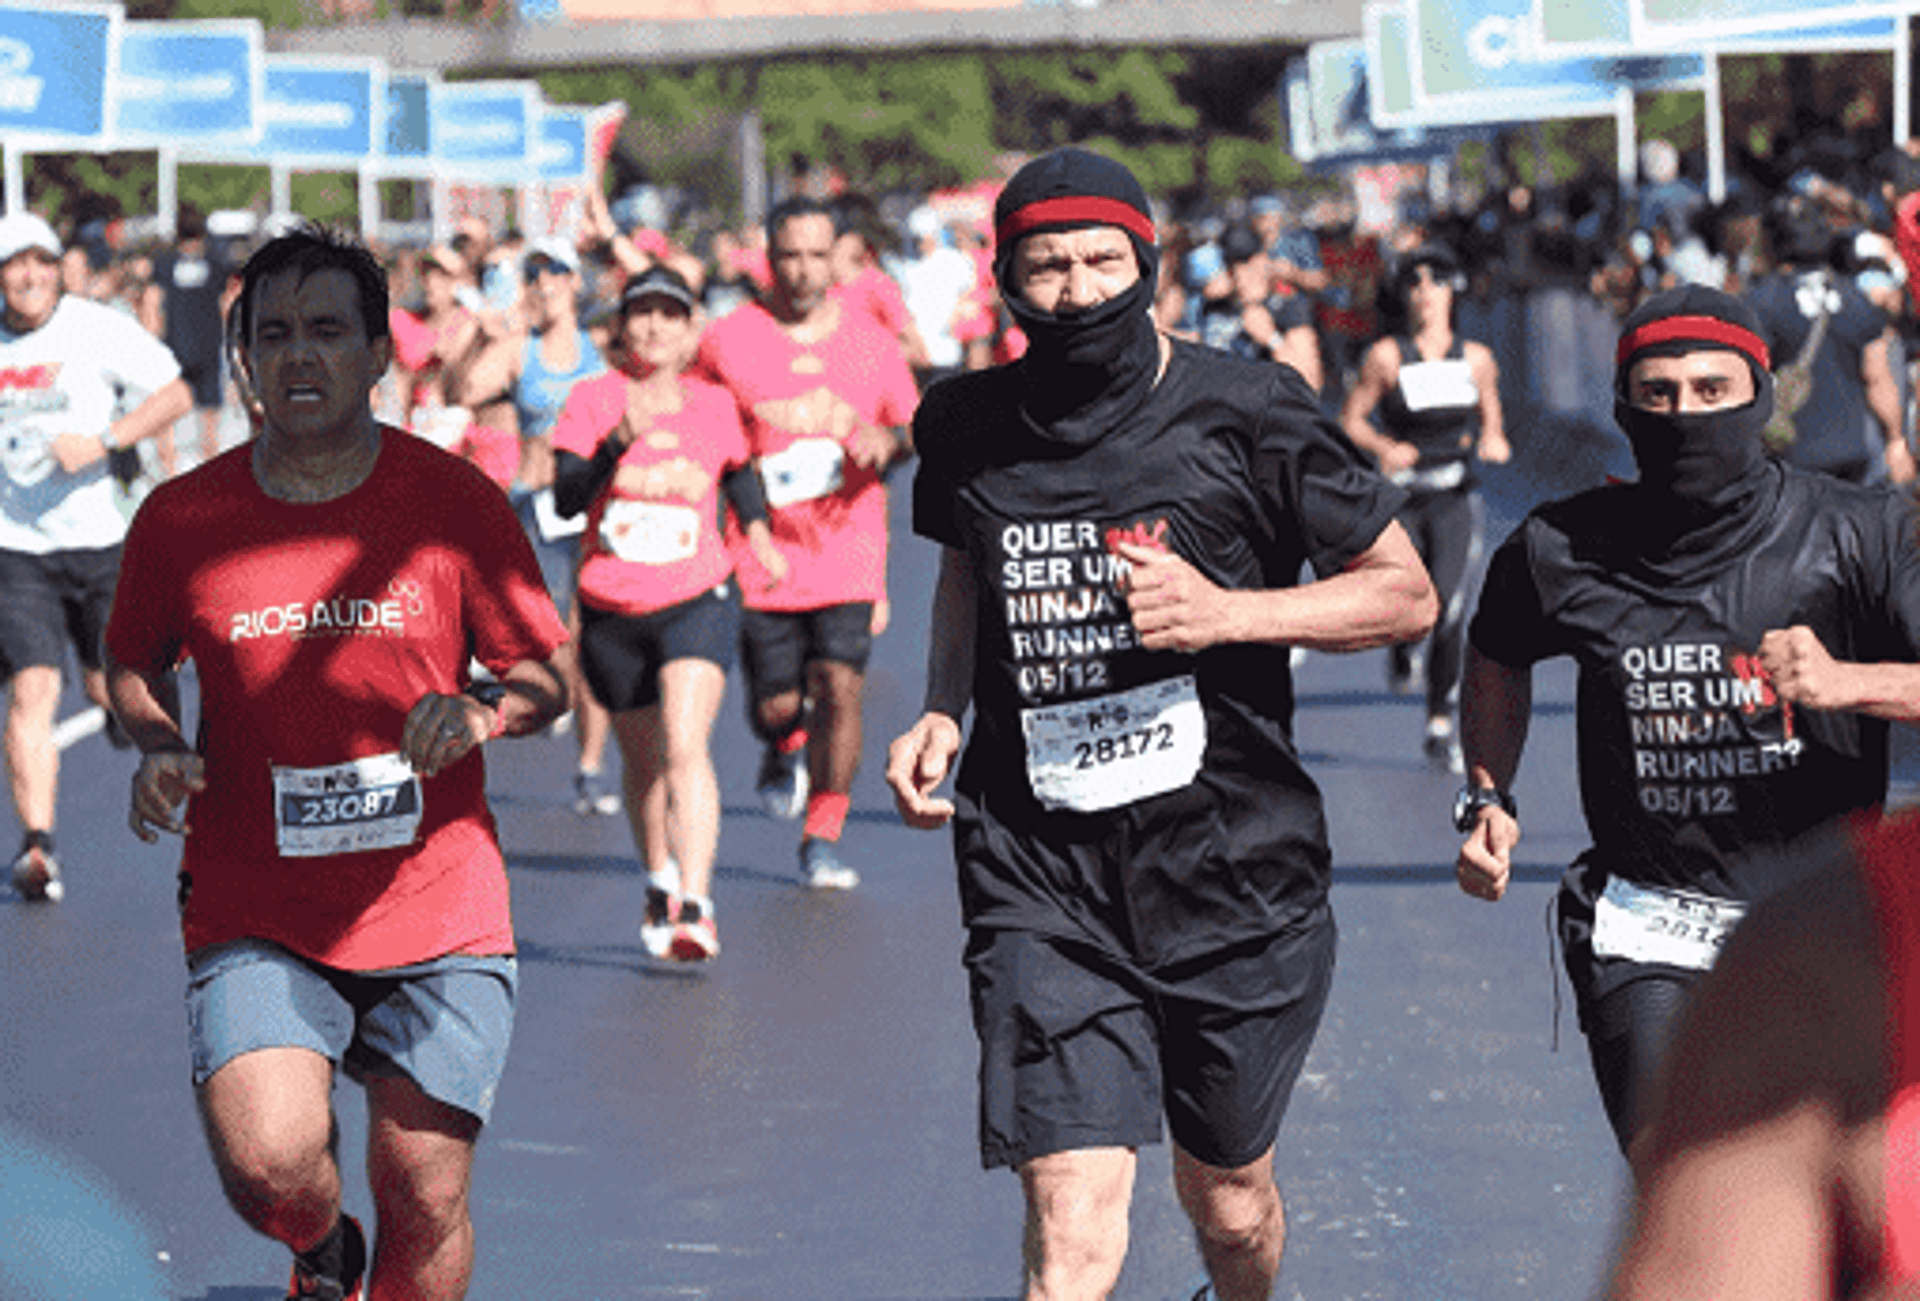 Corredores vestidos de ninjas promoveram a Uphill Serra dos Órgãos na Meia Maratona do Rio. (Foto de Ary Kaye Divulgação)